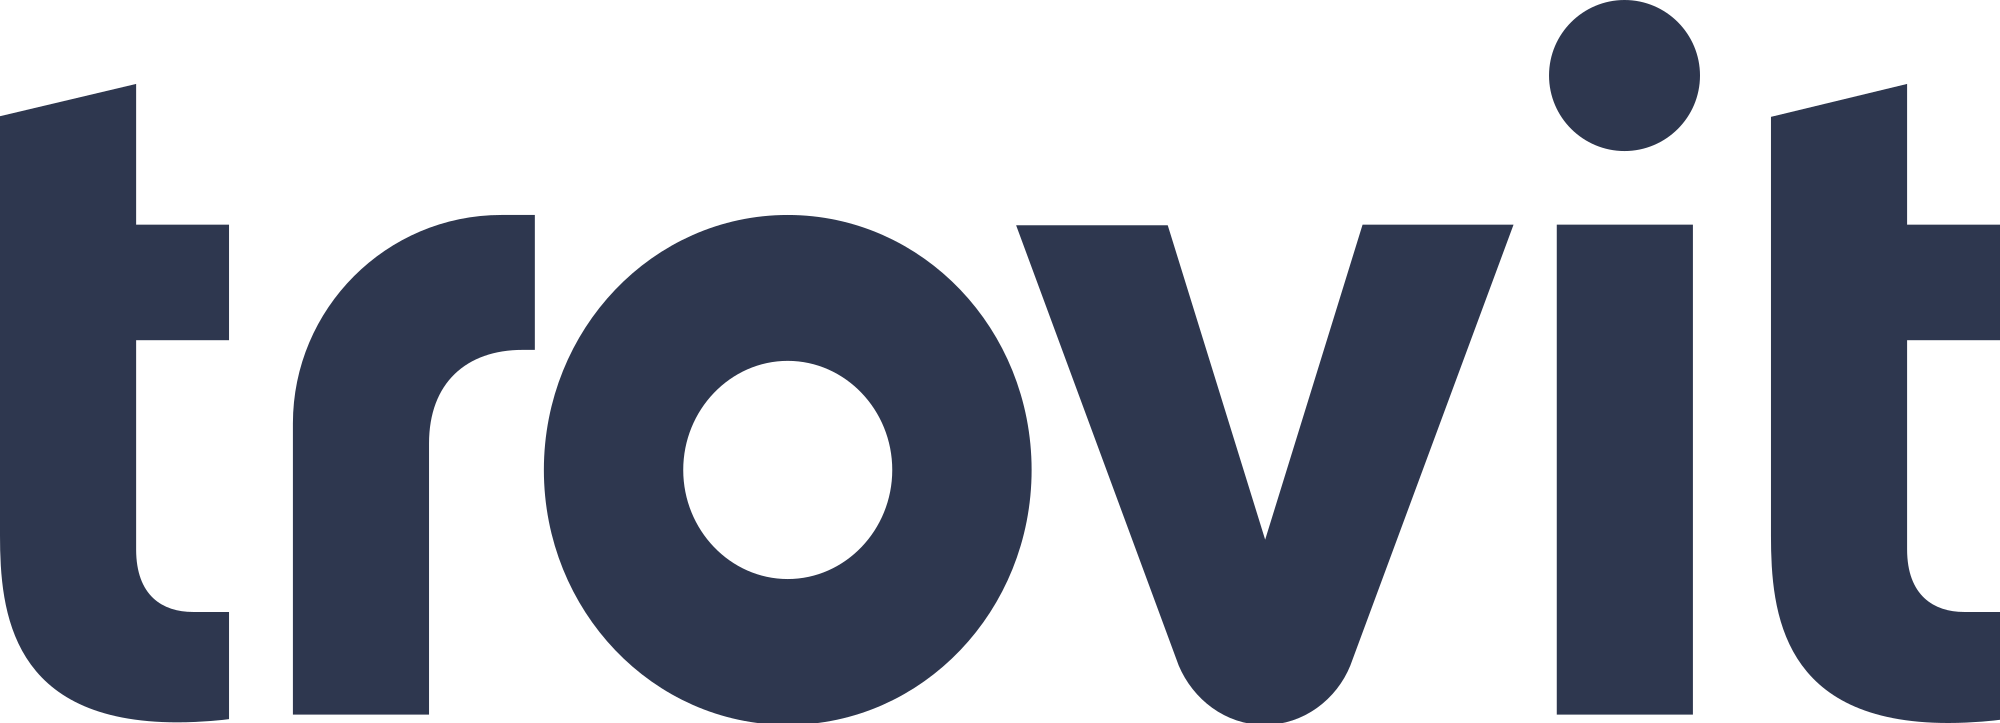 2000px-Trovit_logo.svg.png